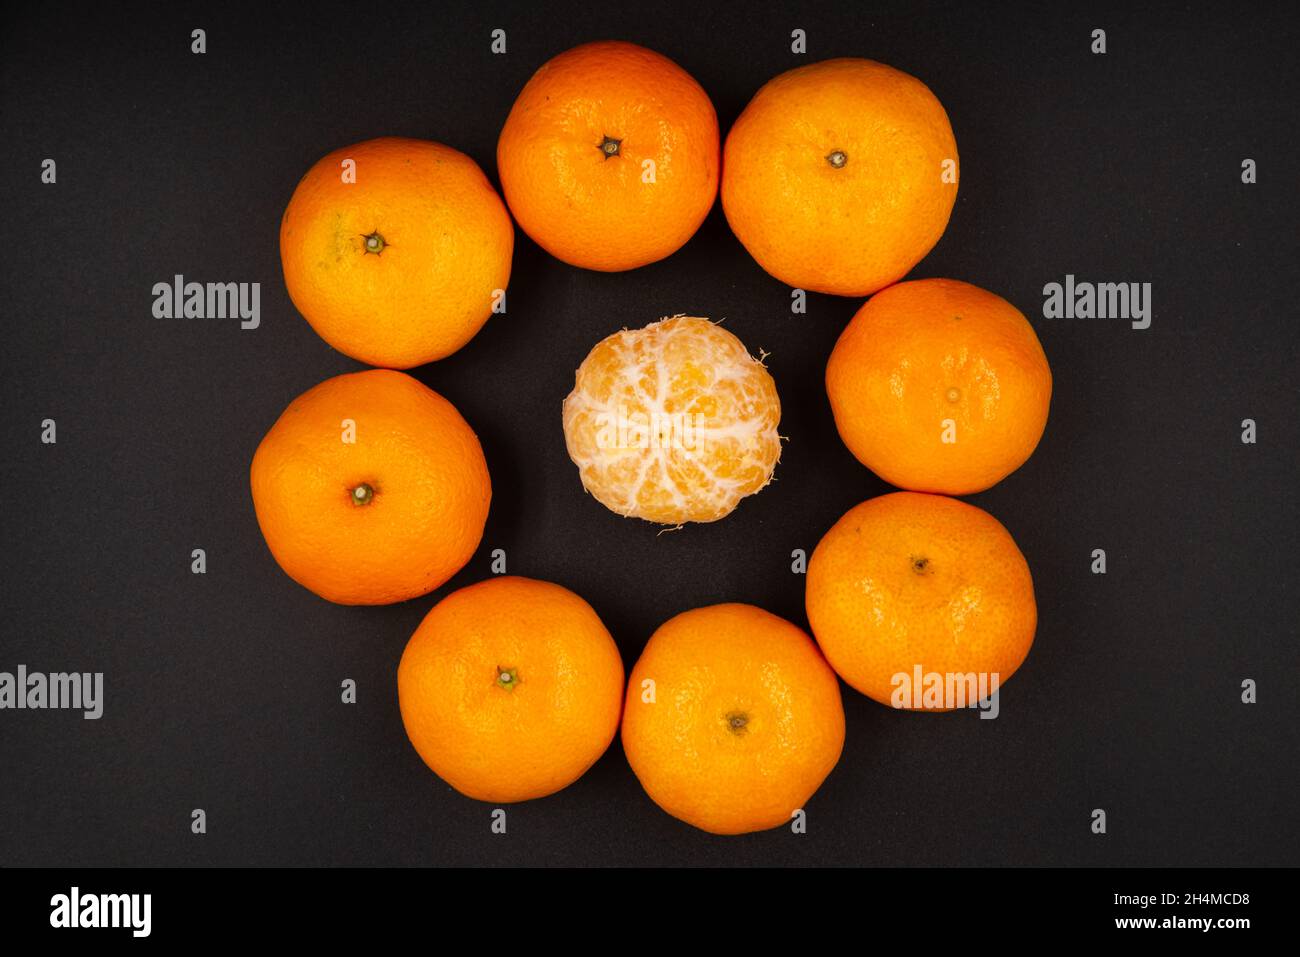 primo piano di mandarini arancioni maturi disposti in cerchio con un mandarino pelato al centro isolato su sfondo nero Foto Stock